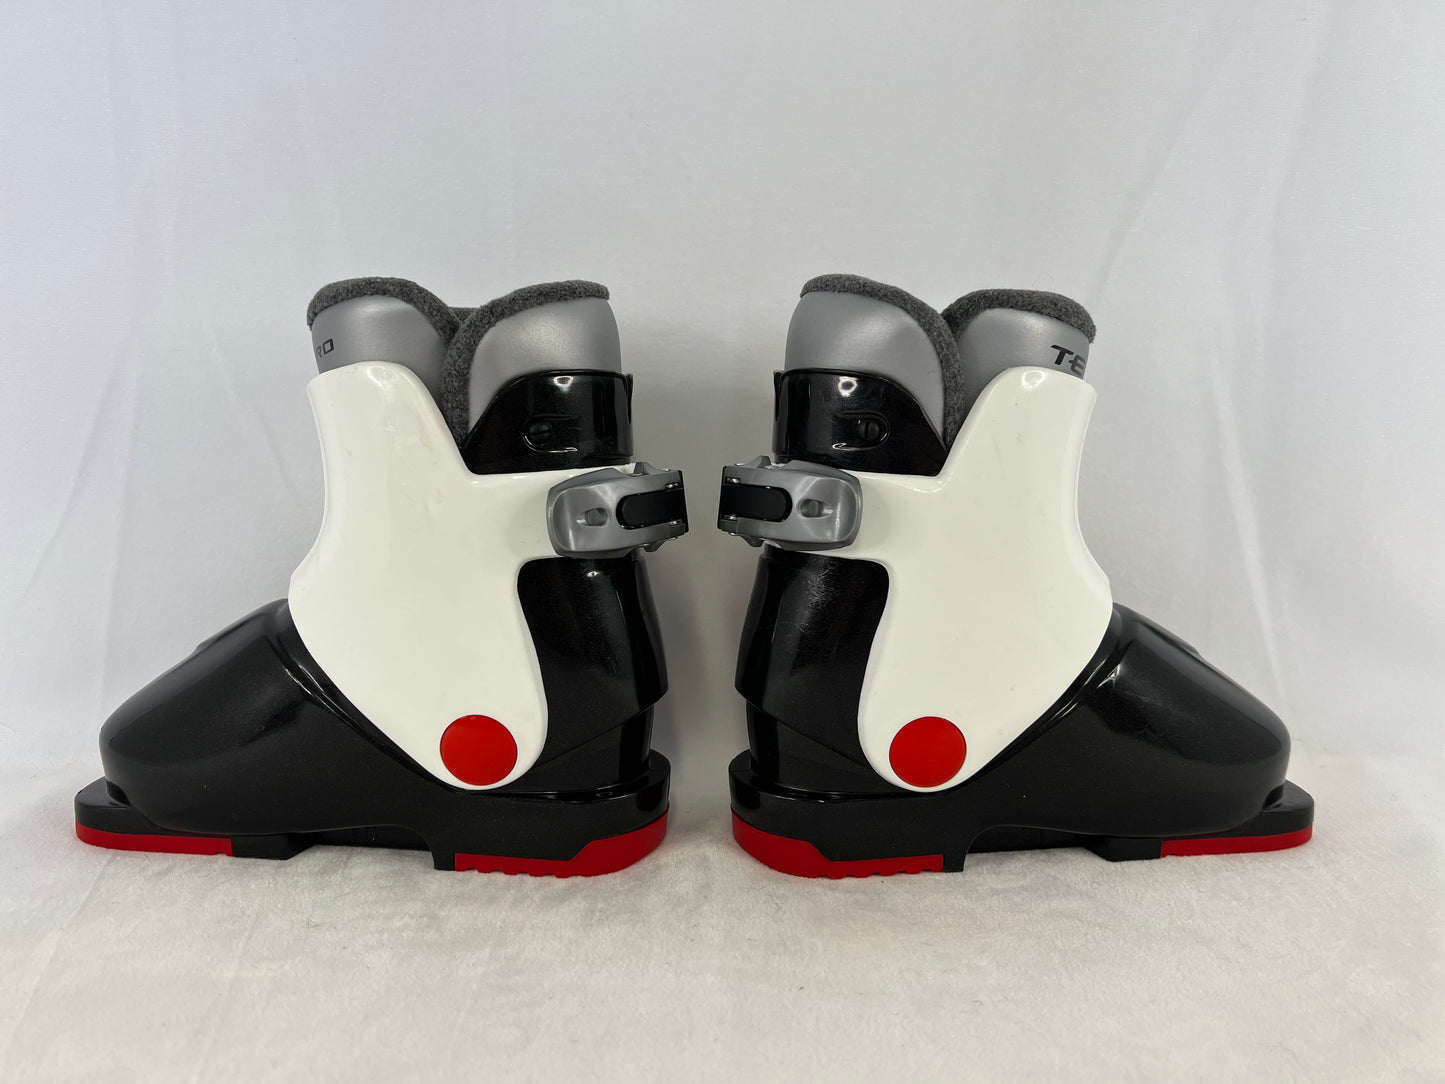 Ski Boots Mondo Size 16.0 Child Size 9  206 mm Tecno Pro Black White Red  Excellent New Demo Model